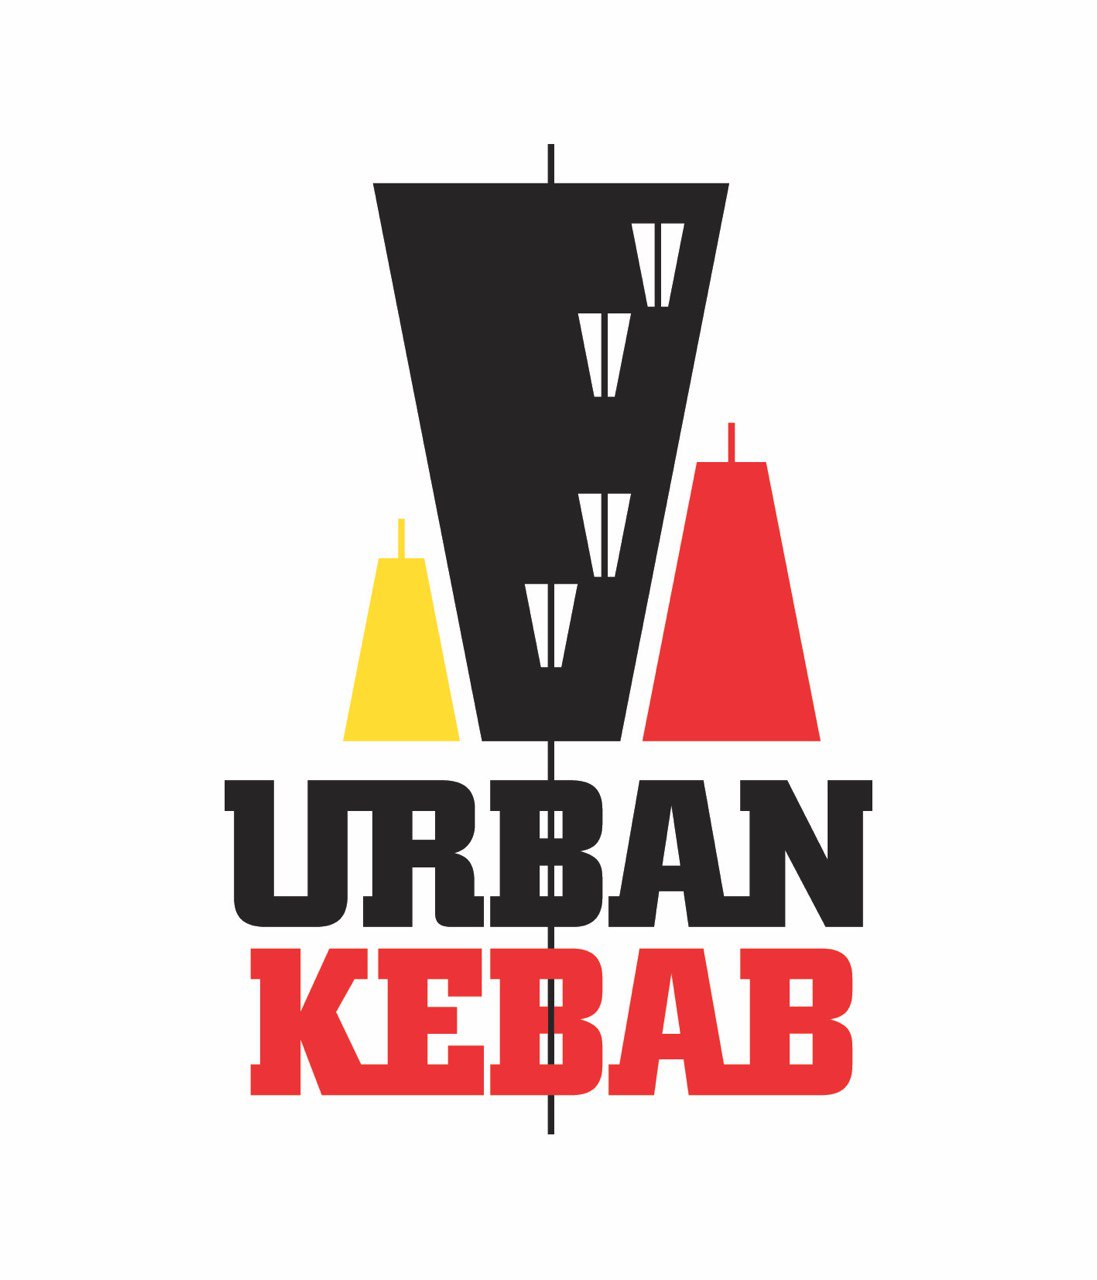 Urban Kebab